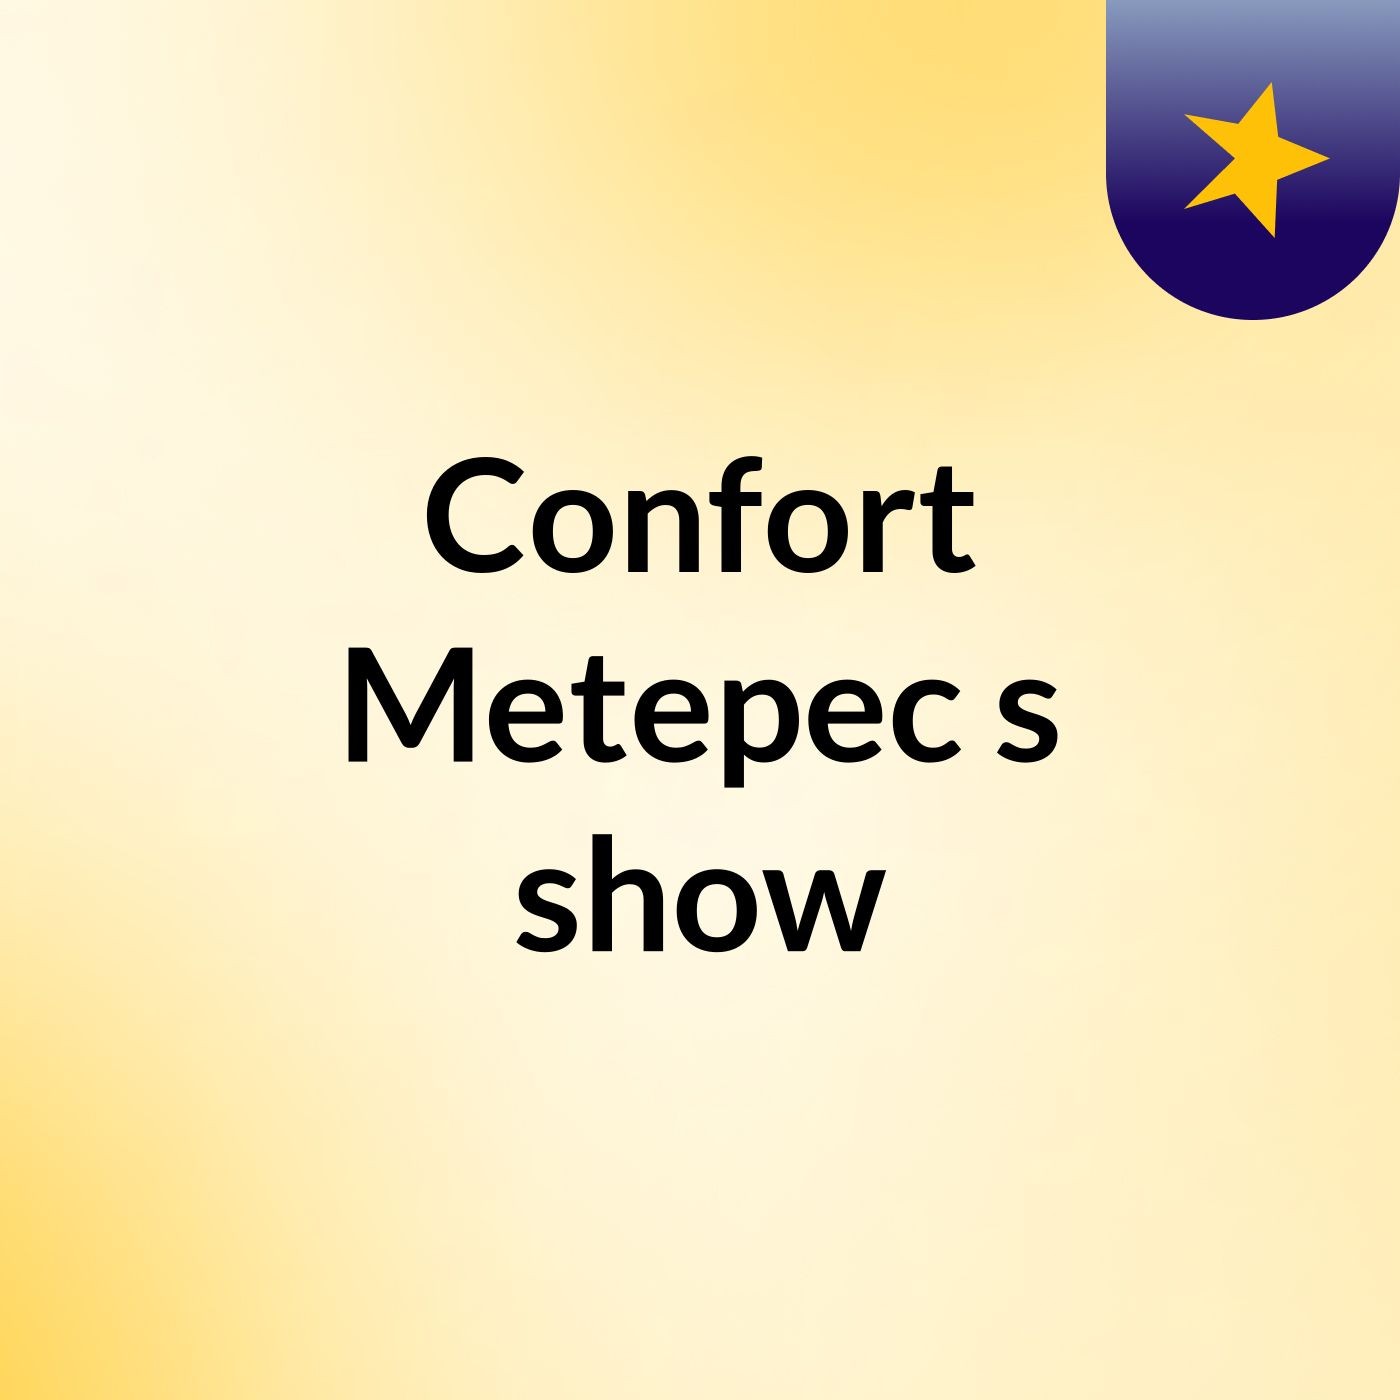 Confort Metepec's show